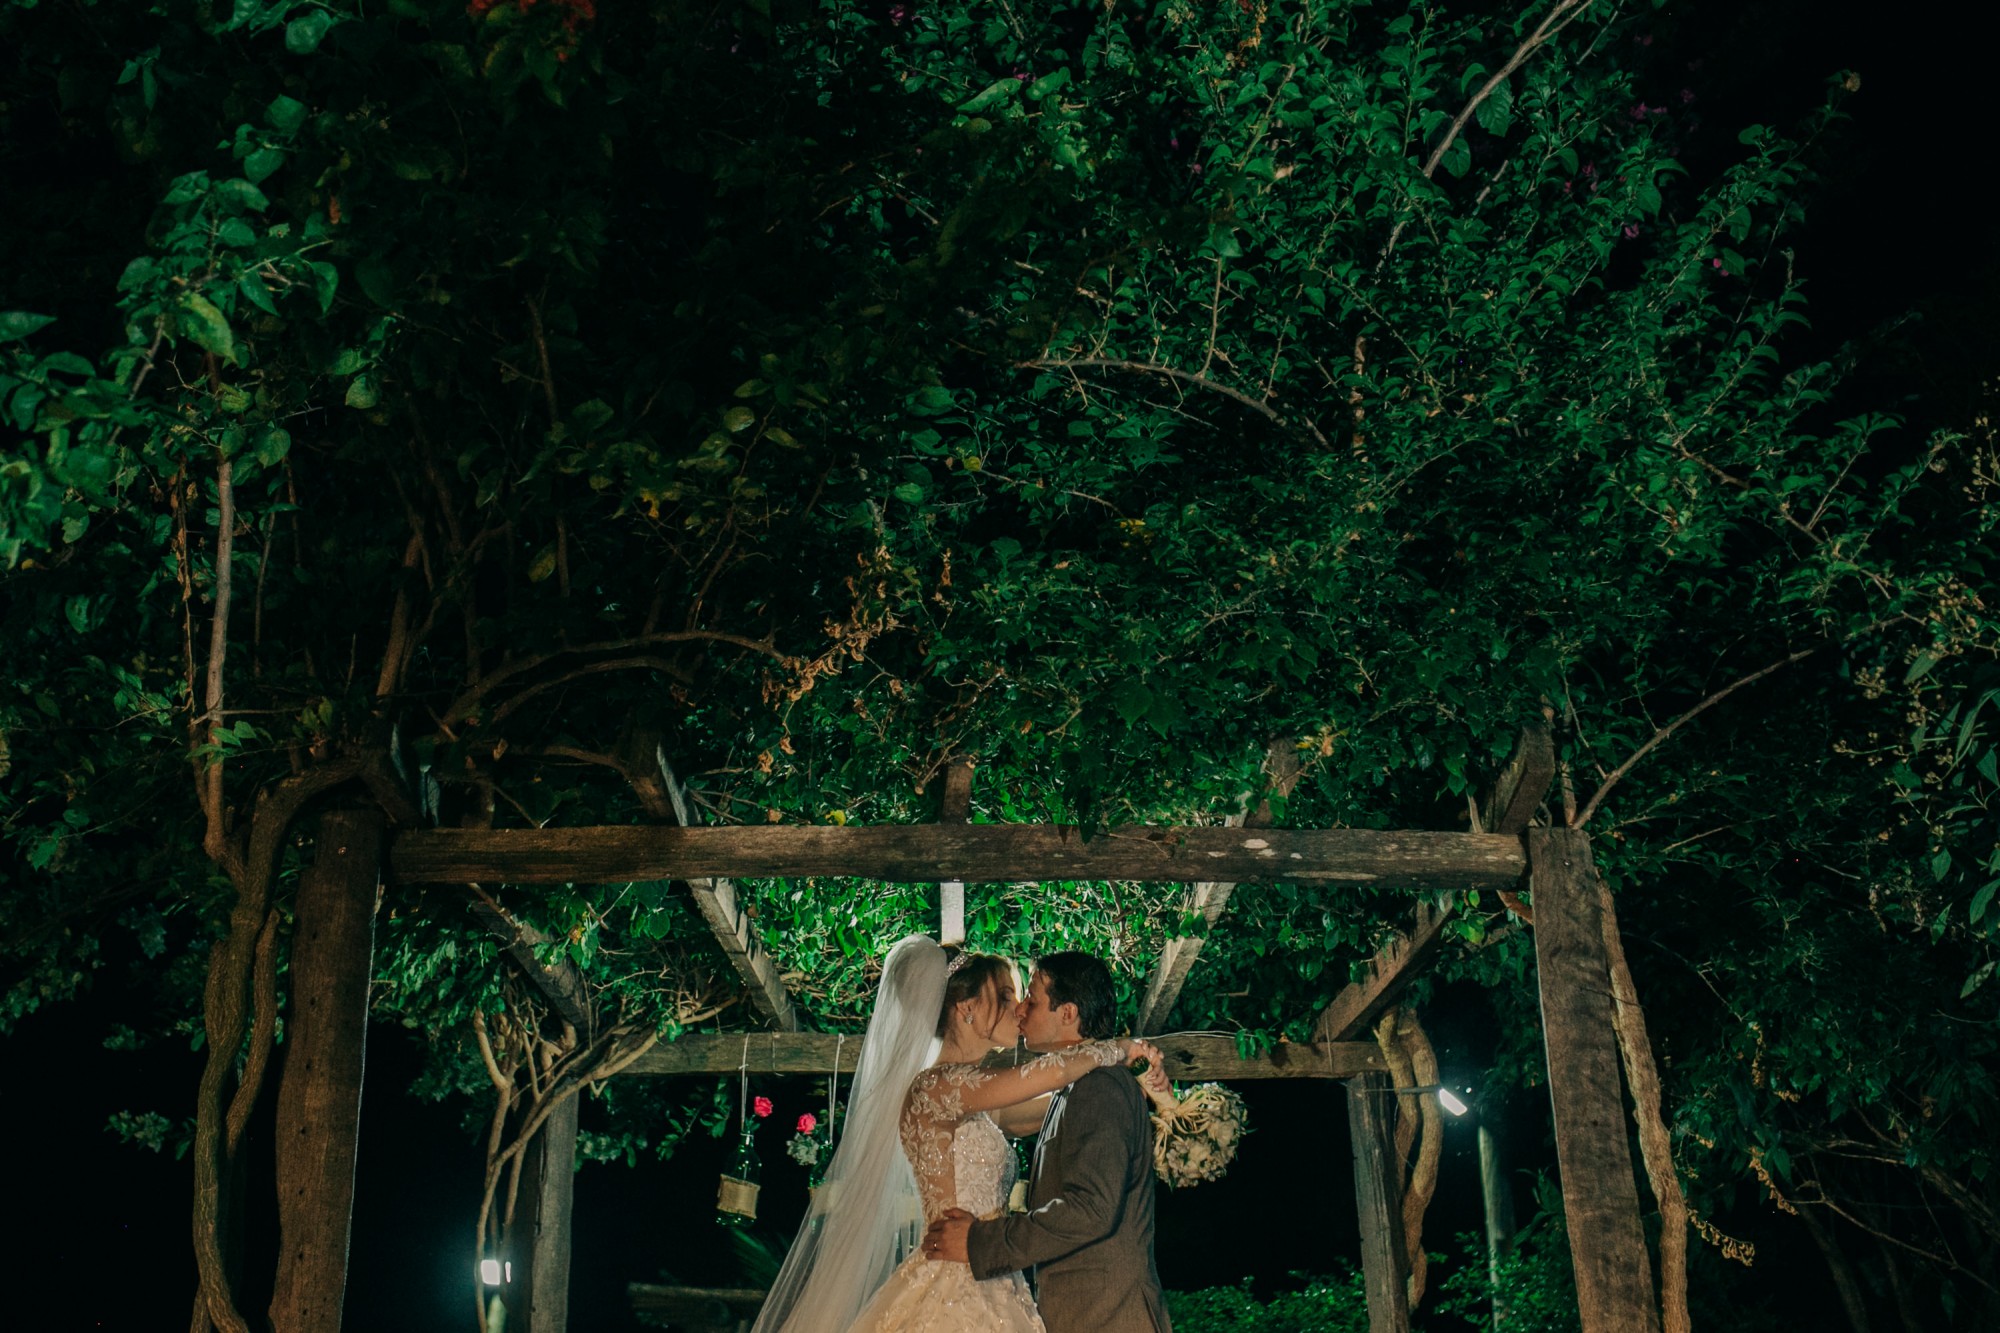 Casamento Anderson e Juliana Fioreli em Iporã Paraná - por Lorran Souza e Léia Sotile - Fotografos de casamentos - JA-2194